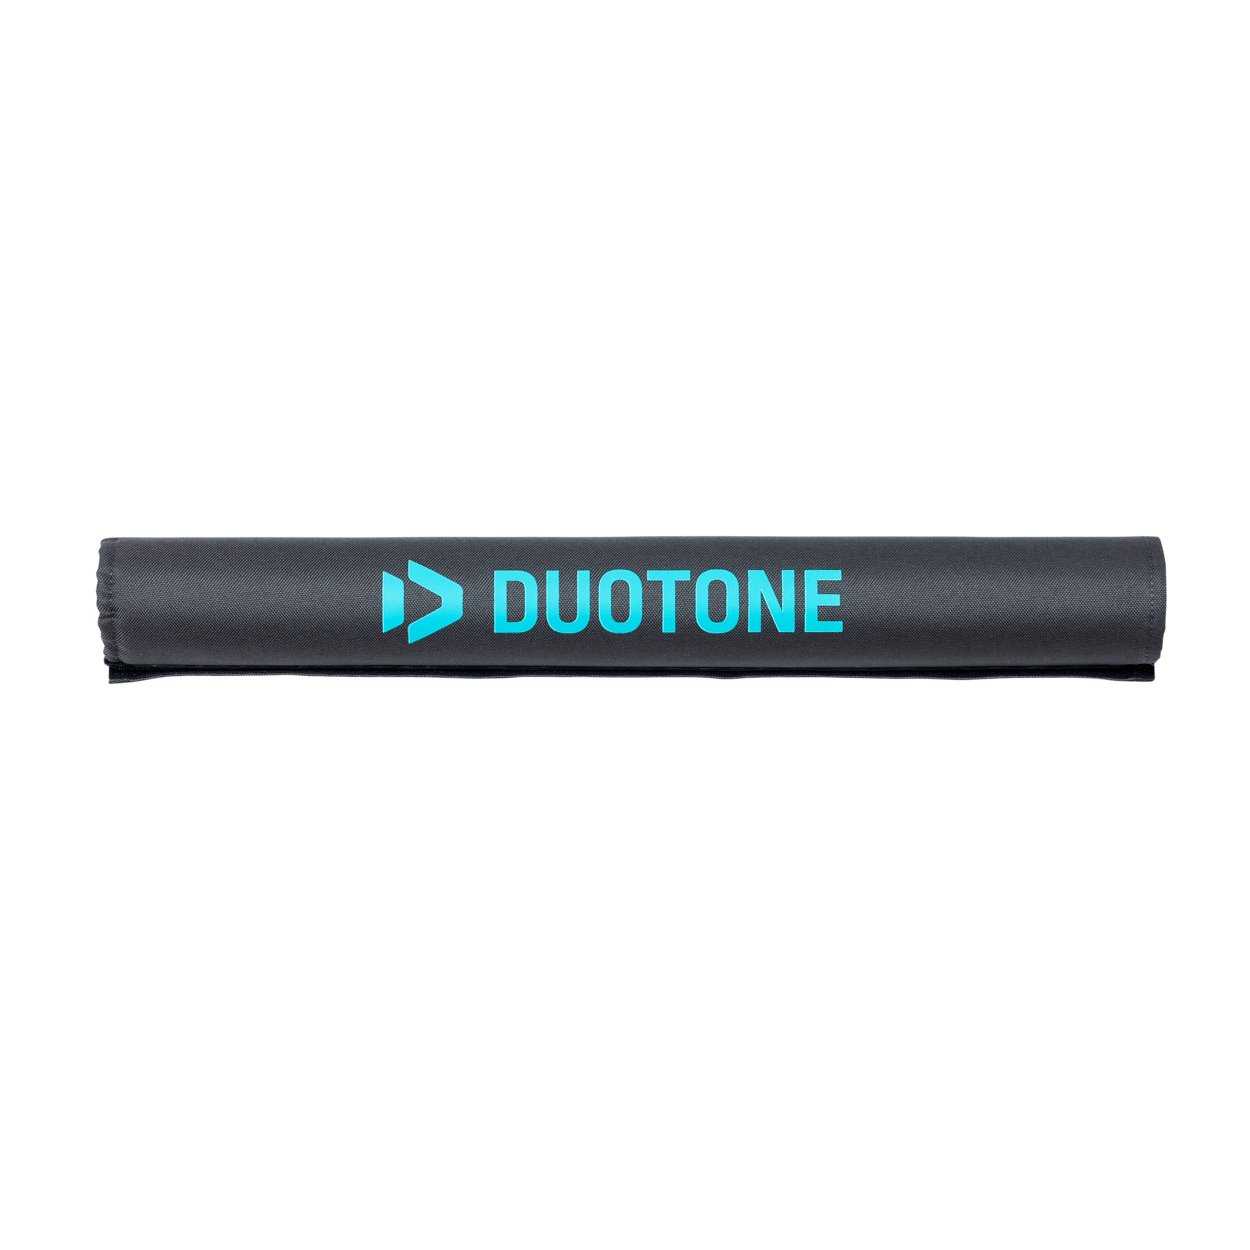 Duotone Roofrack-Pad Basic (1pair) 2022 - Worthing Watersports - 9008415843886 - Tuning Parts - Duotone Windsurfing